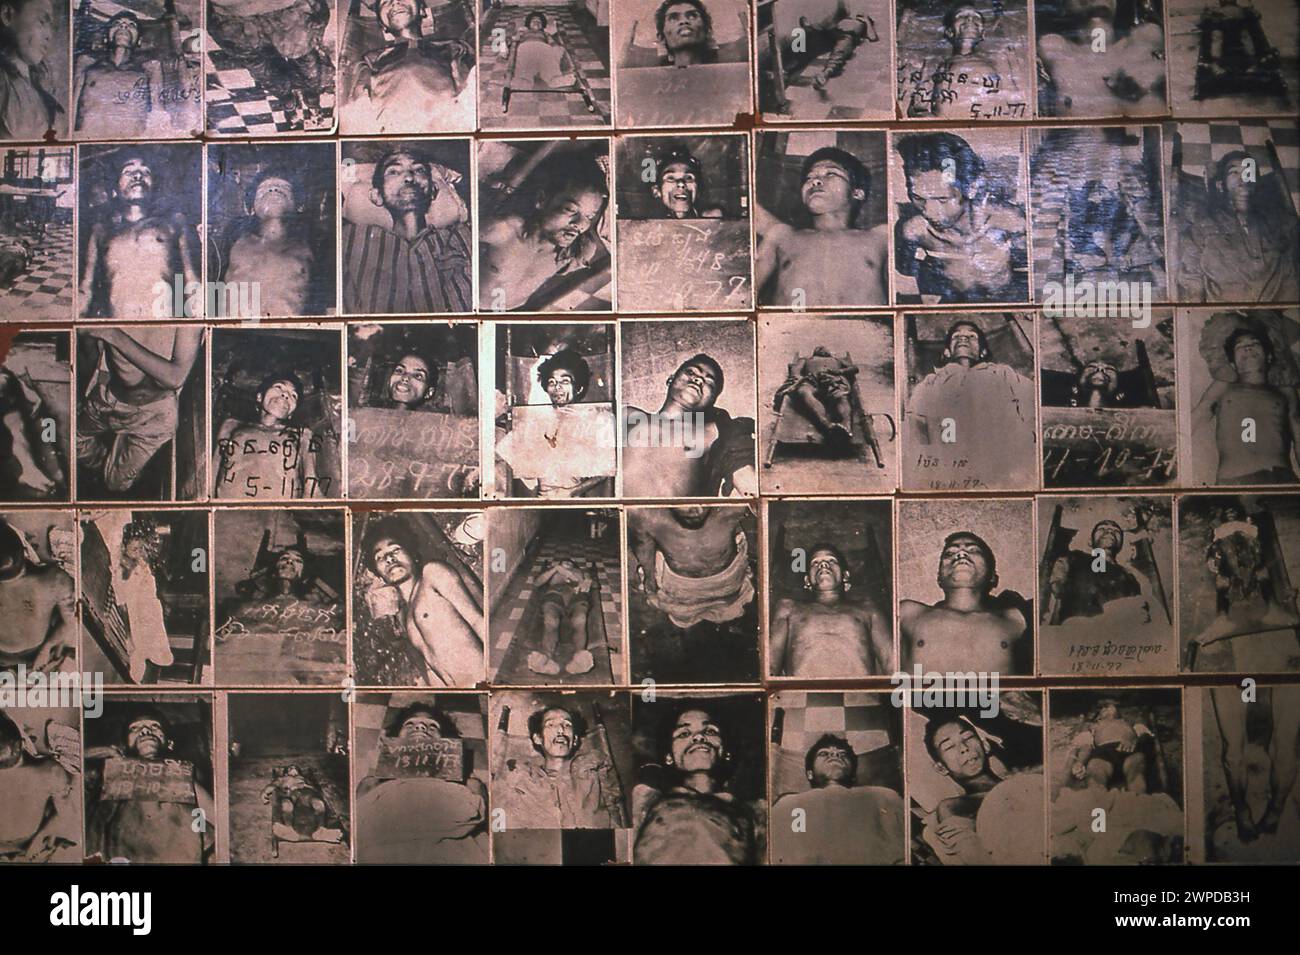 Asie ; Cambodge ; Phnom Penh ; Toul Sleng ; Toul Sleng Genocide Museum ; Musée ; Musée national cambodgien ; prison de sécurité 21 ; Khmers rouges; tyran ; guerre cr Banque D'Images